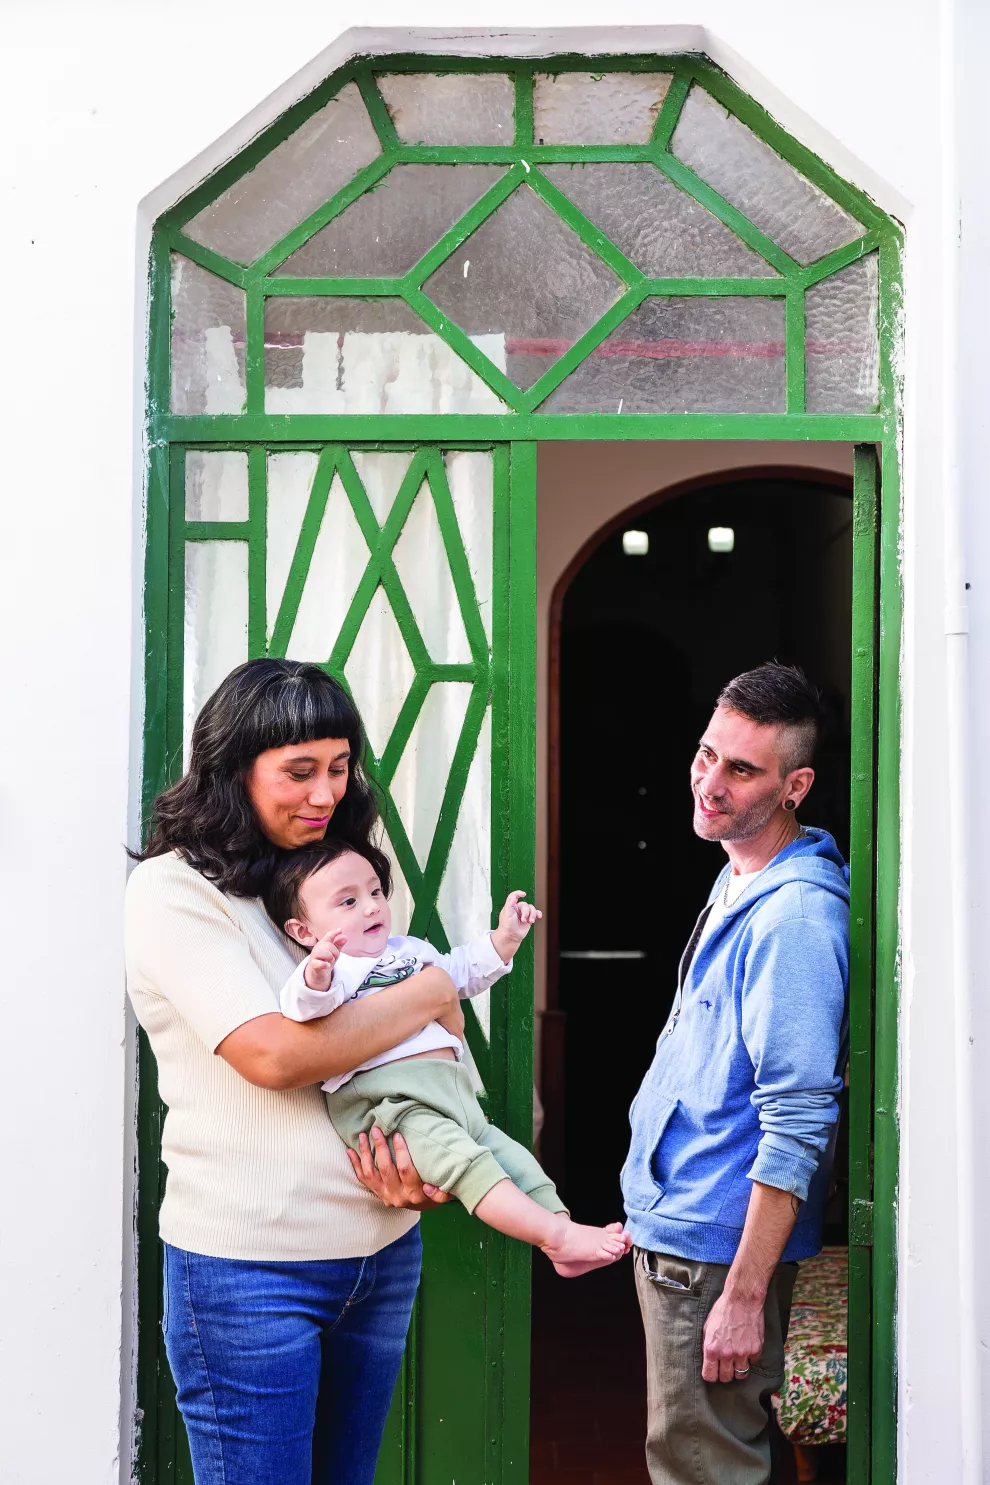 Mariana G. Cáceres y Mariano Moreno se conocen desde los veintitantos; son amigos y hoy crían a Joaquín, su bebé de ocho meses